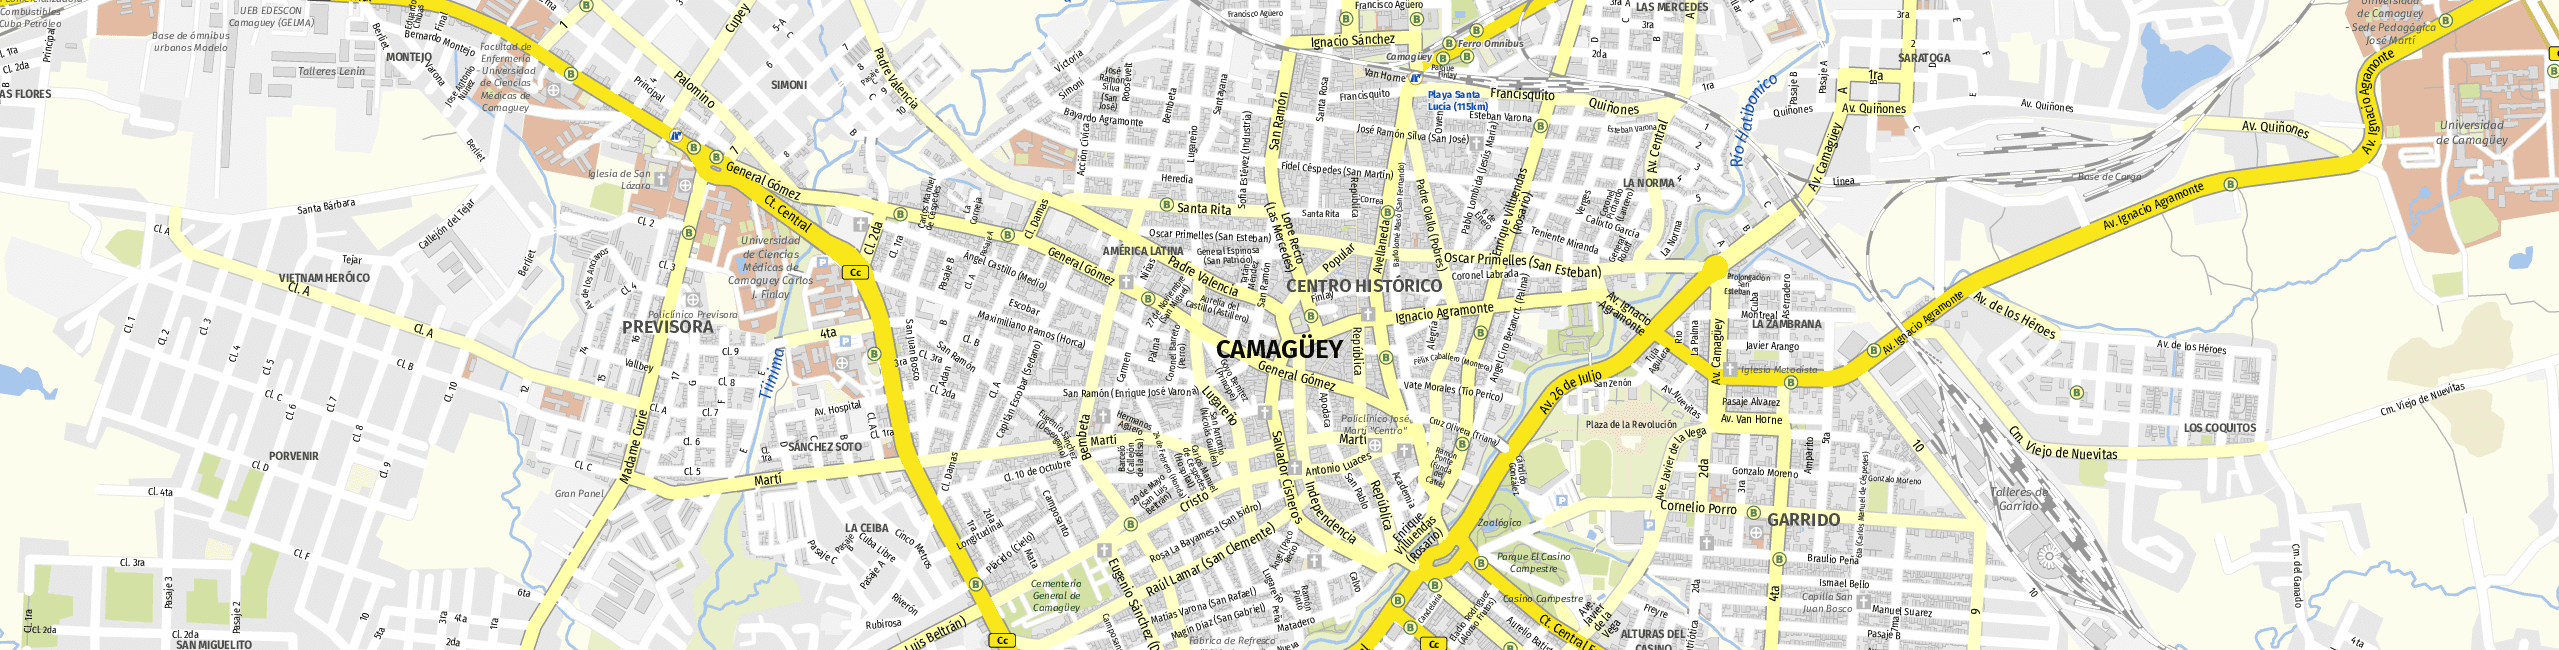 Stadtplan Camagüey zum Downloaden.